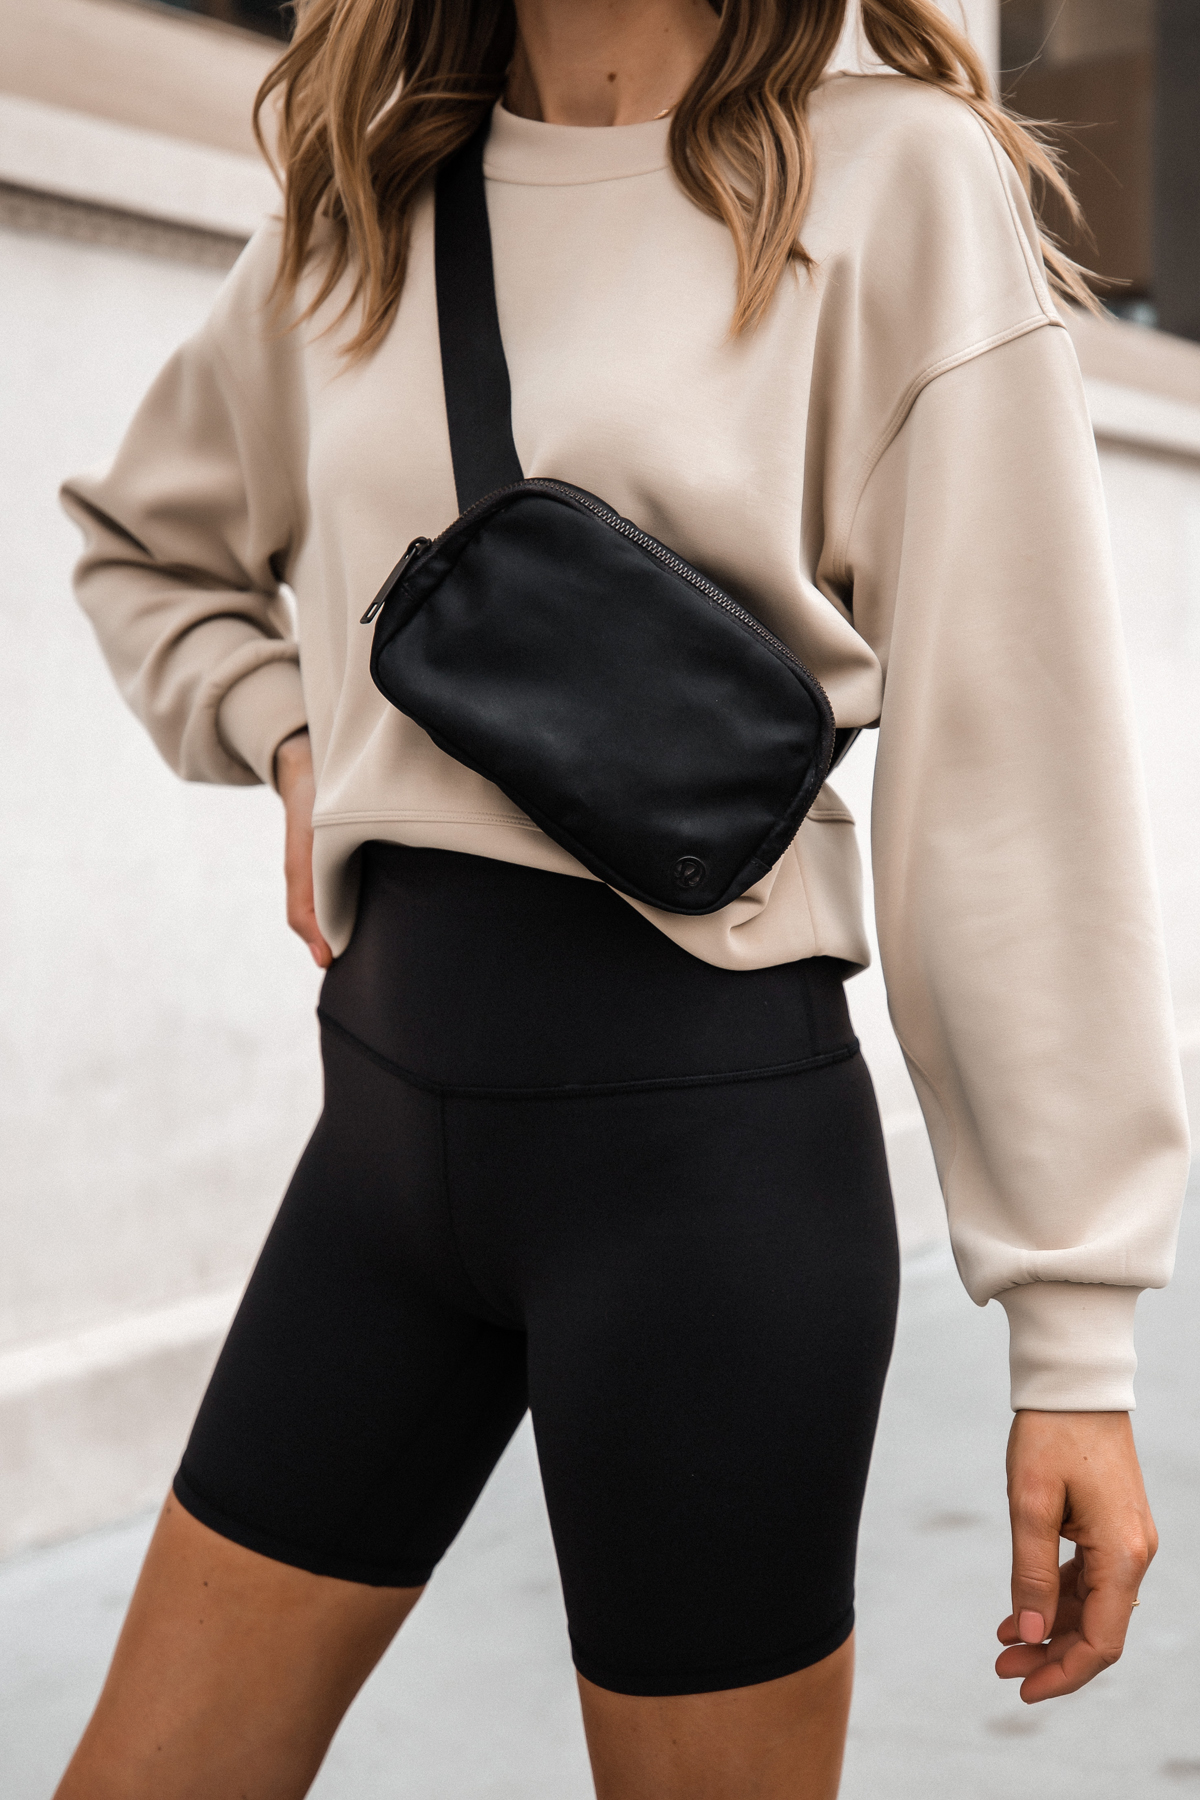 Belt Bag Outfit Ideas